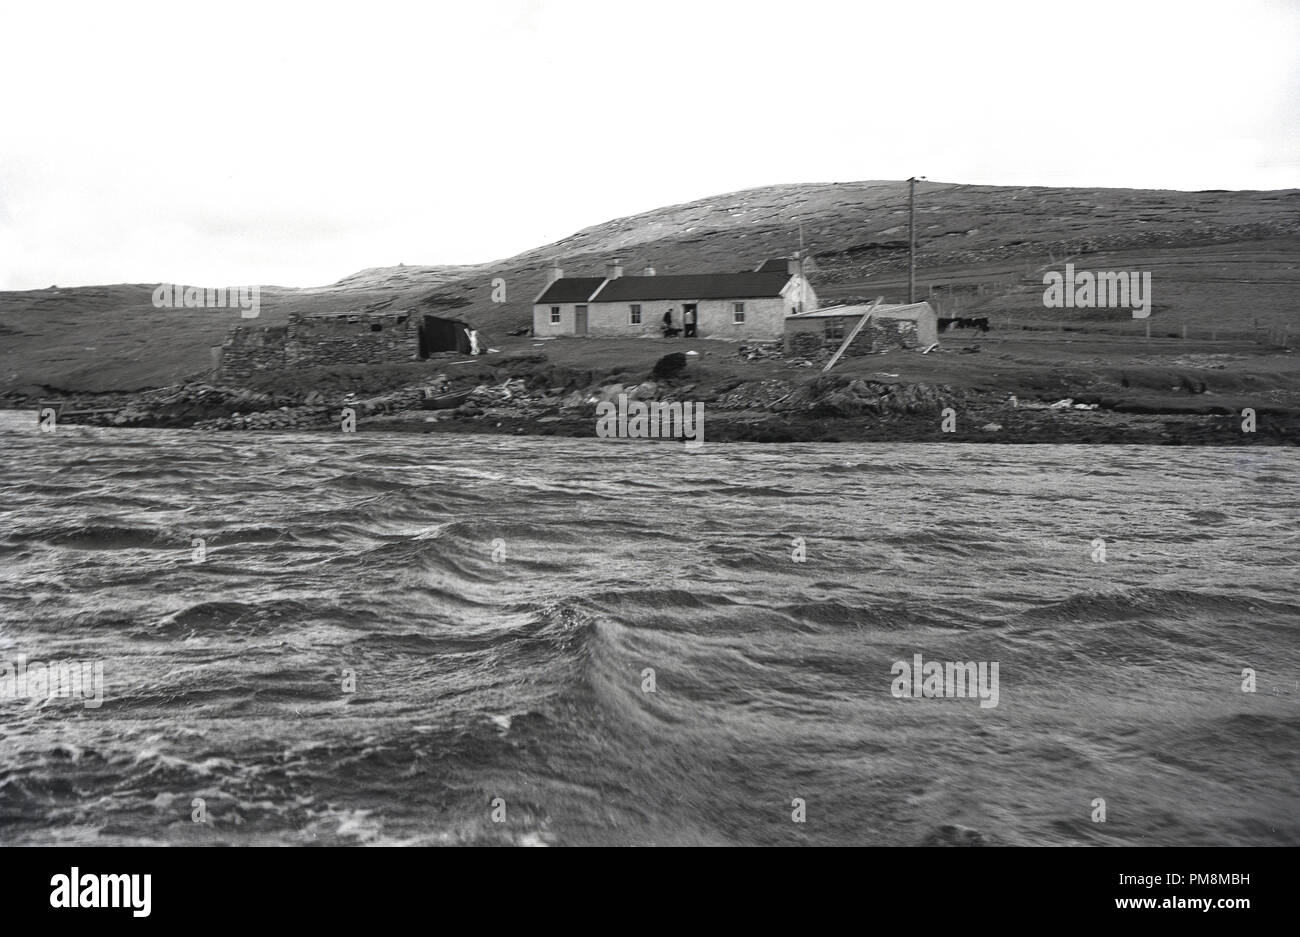 Degli anni Cinquanta, storico, un singolo-storey crofter's cottage si siede da bordo dell'acqua nel paesaggio arido di Orkney isole al largo della costa nord della Scozia. Queste isole dimenzogne sono notevoli per la loro mancanza di alberi e le forti correnti di marea in firths. Foto Stock